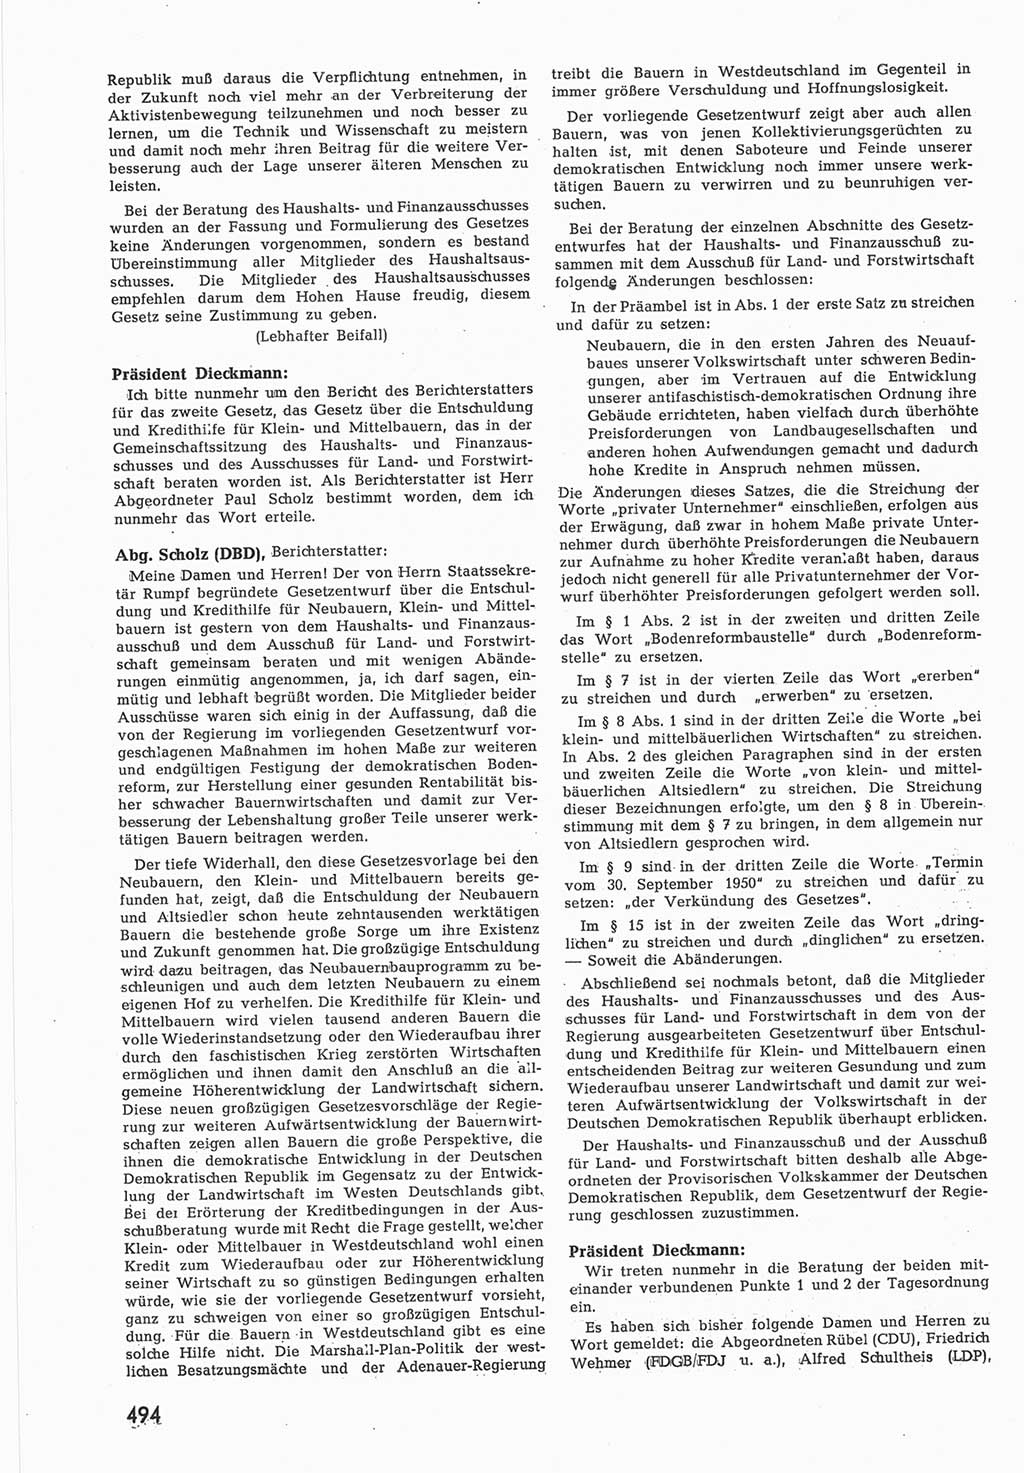 Provisorische Volkskammer (VK) der Deutschen Demokratischen Republik (DDR) 1949-1950, Dokument 512 (Prov. VK DDR 1949-1950, Dok. 512)